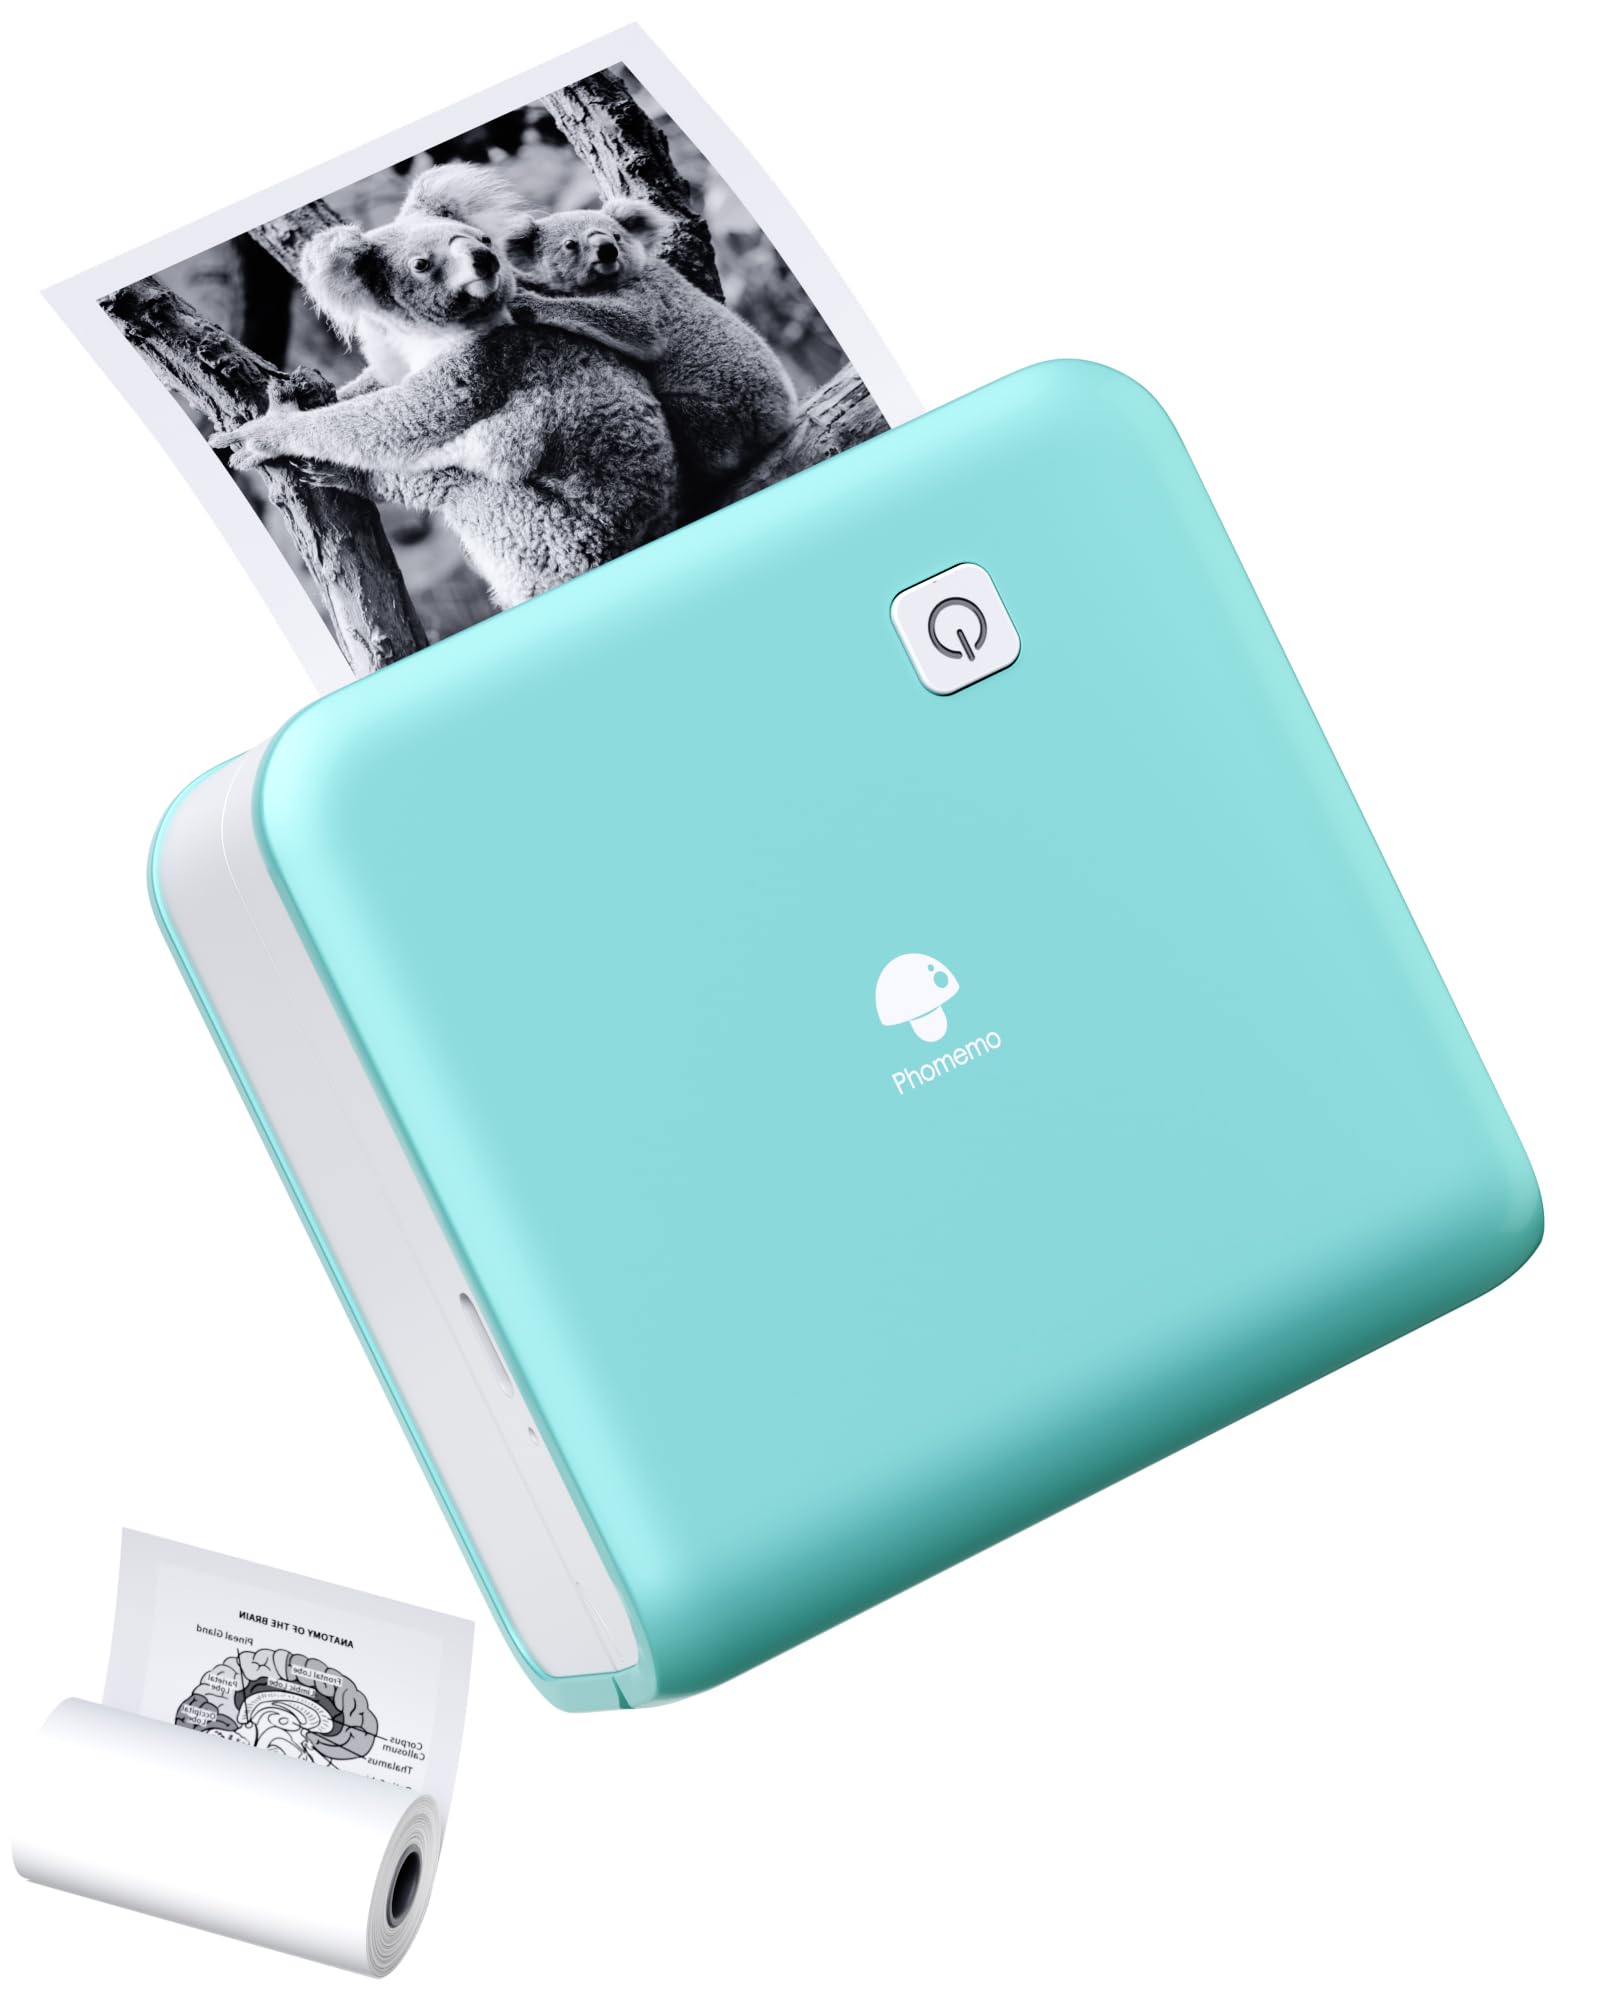 Phomemo M02 Pro 300 DPI Mini Drucker,Thermodrucker Bluetooth Fotodrucker für Handy,Druckgröße 15,25,53mm,für iOS und Android, Studium,Scrapbooking,Fotos,Notizen - Grün